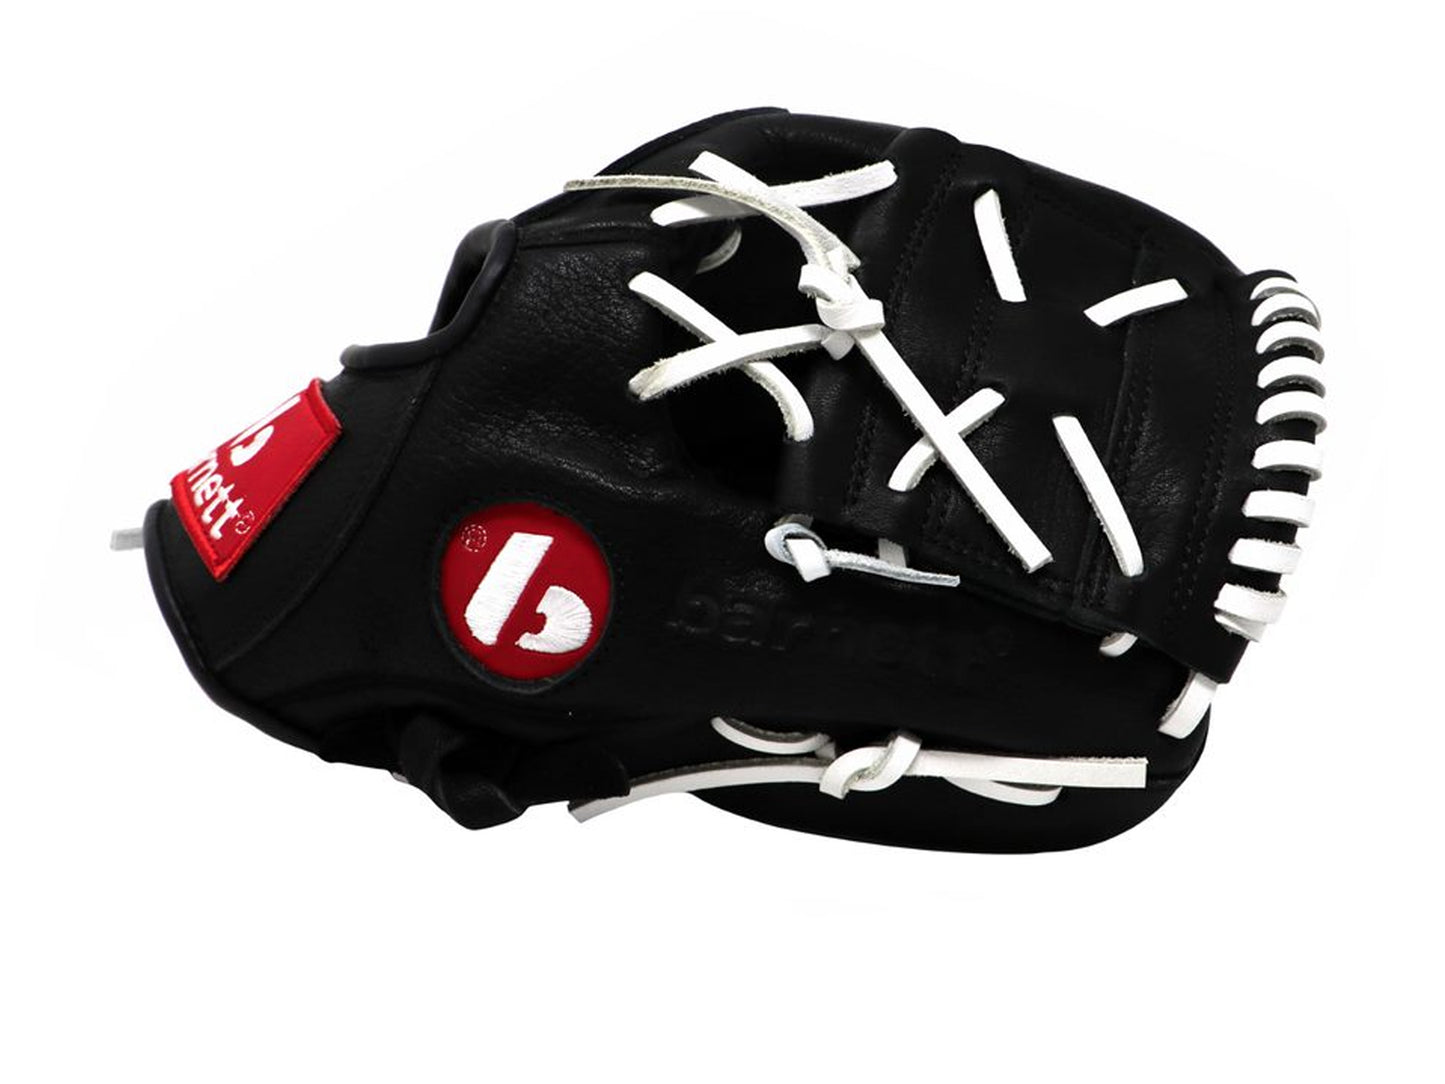 GL-110 gant de baseball en cuir, 11 (pouces), Infield, Noir